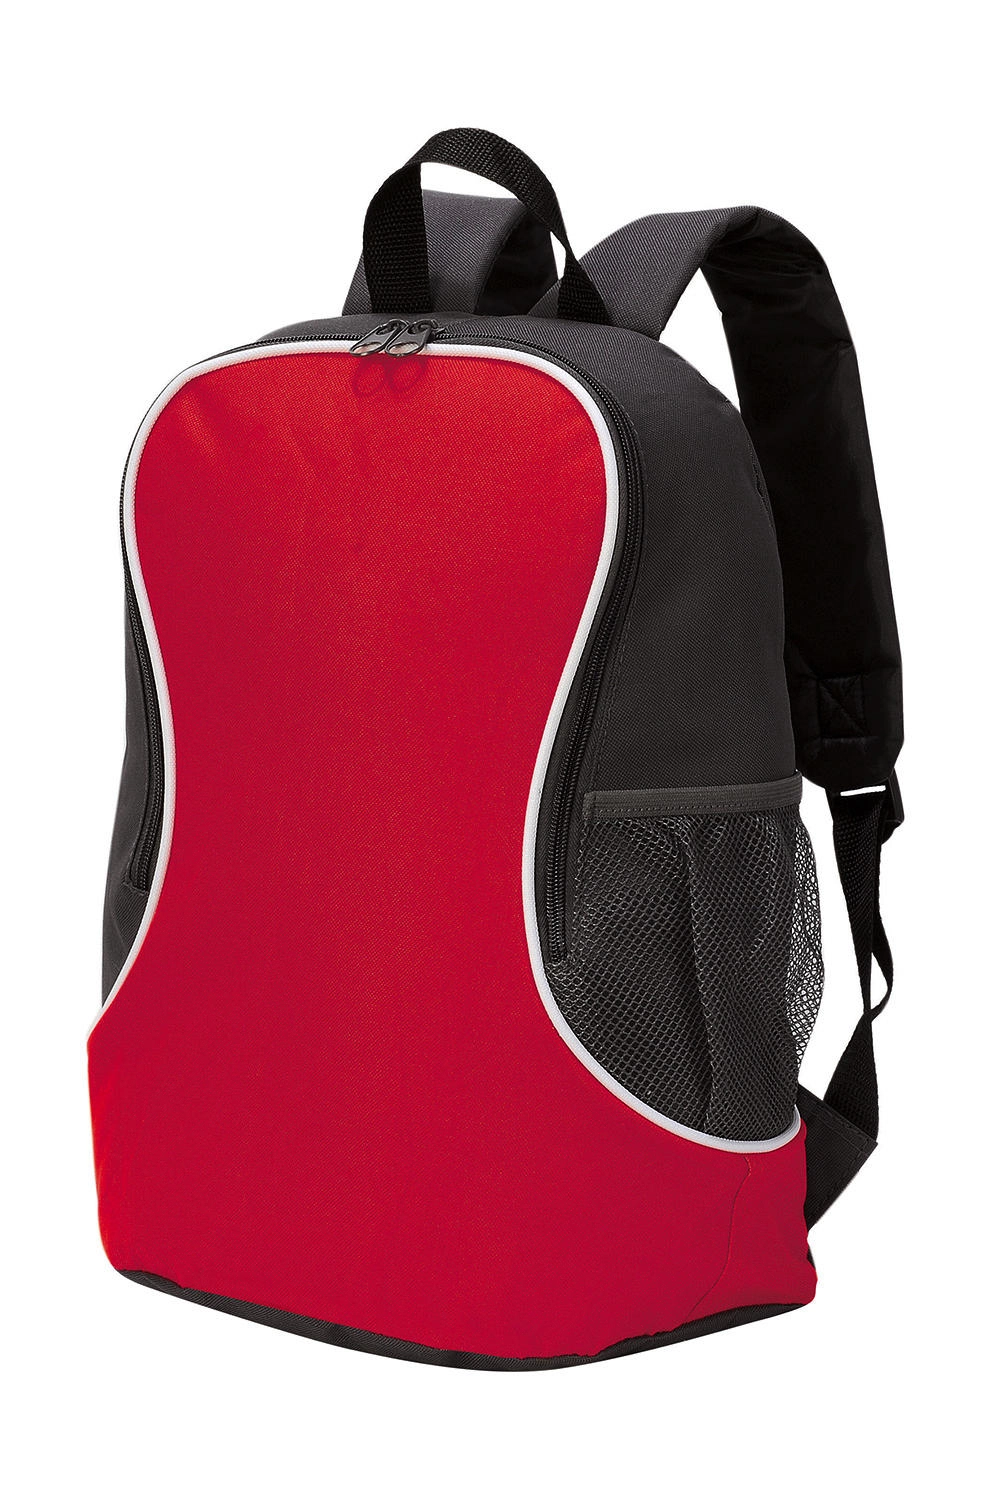 Fuji Basic Backpack zum Besticken und Bedrucken in der Farbe Red/Black mit Ihren Logo, Schriftzug oder Motiv.